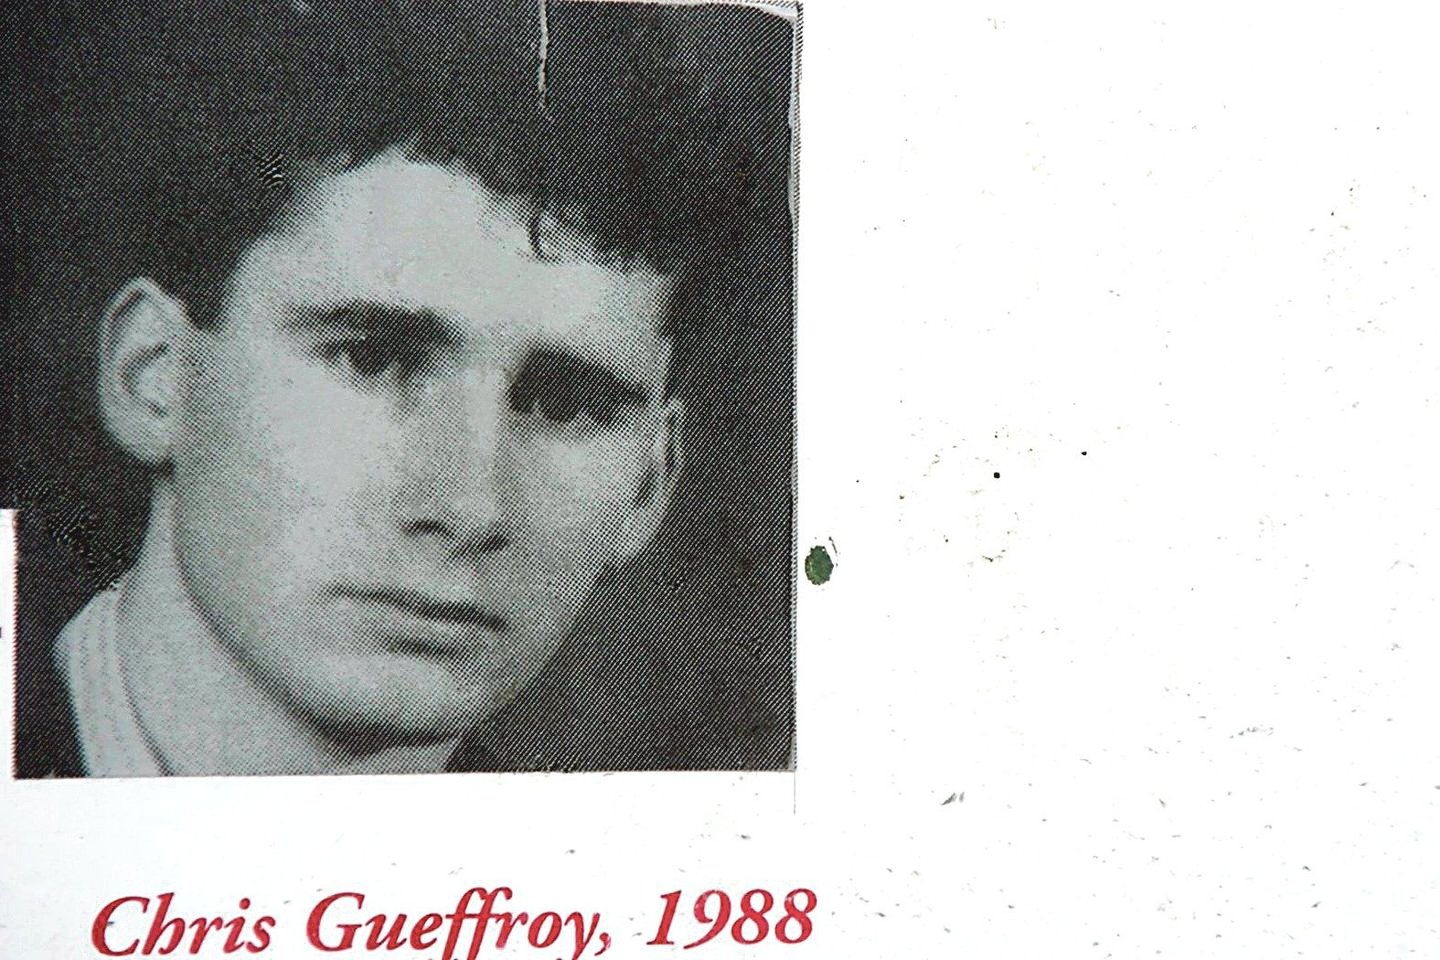  20-metis Chrisas Gueffroy – paskutinis iš tų, kurie žuvo bandydami pabėgti iš VDR į Vakarus.<br> Reuters/Scanpix nuotr.